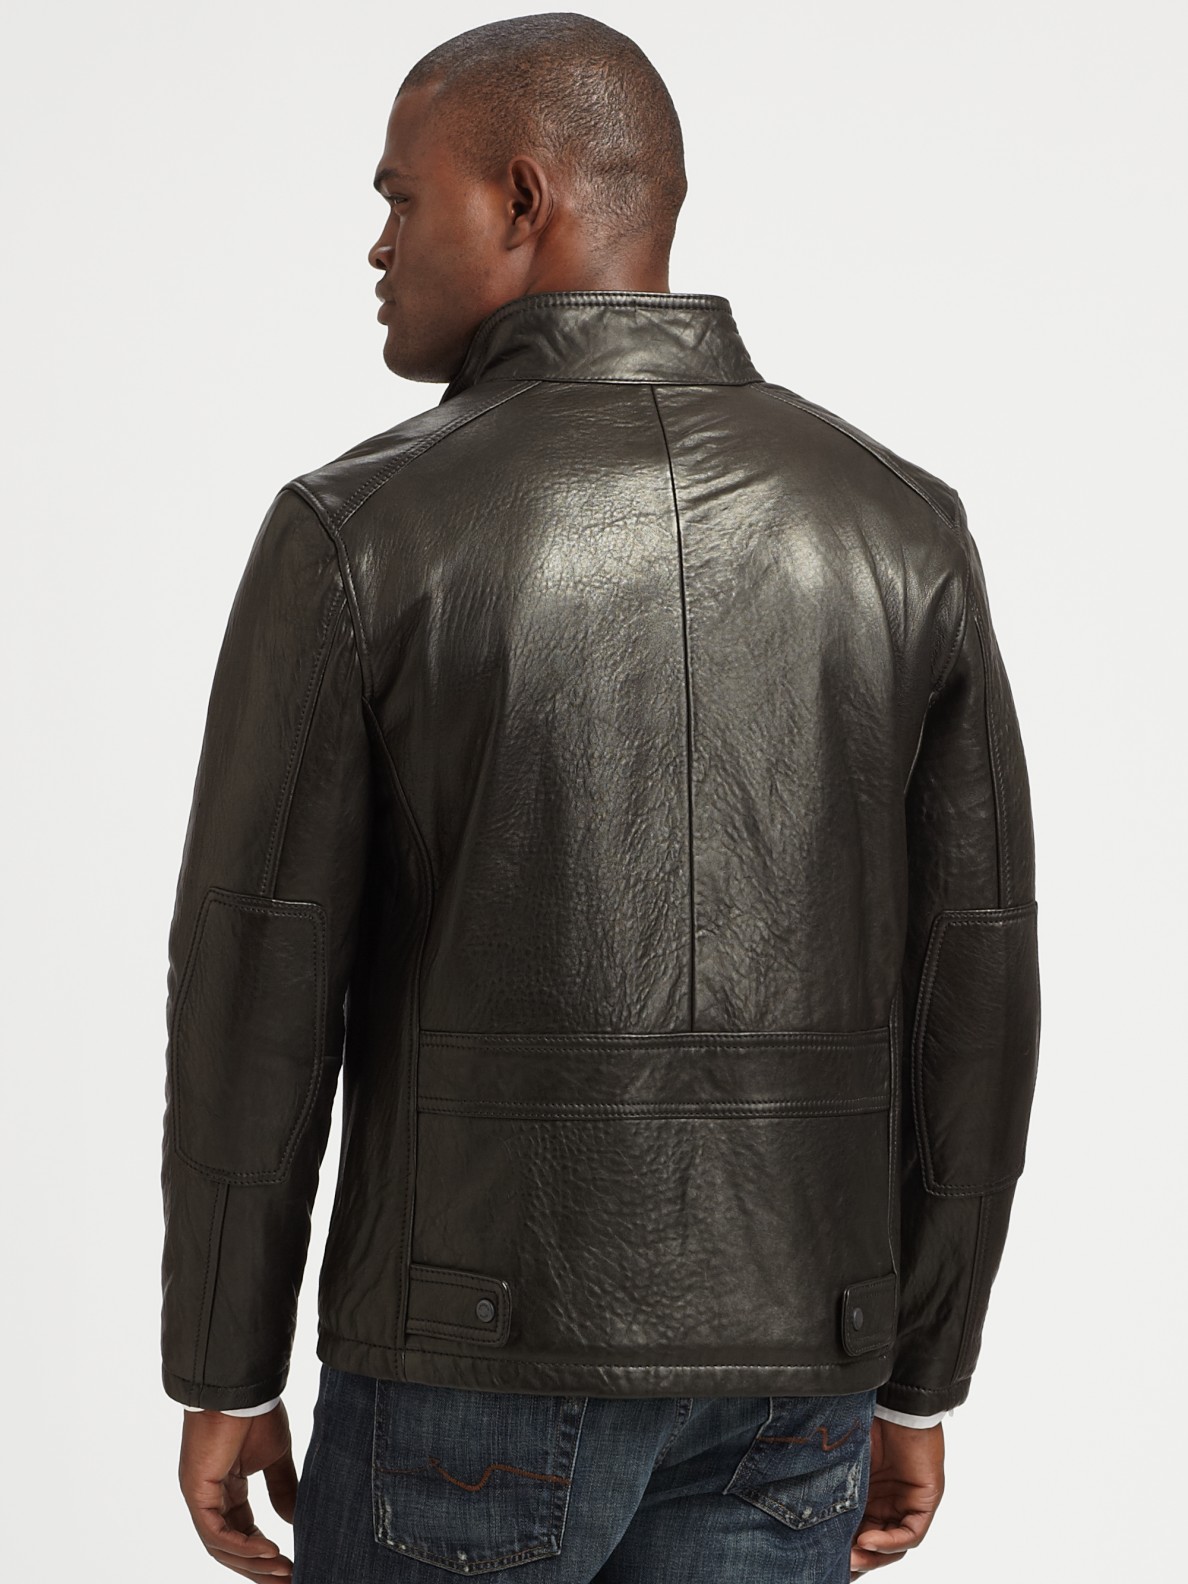 French Rugged Leather Jacket, Black Leather Rugged Jacket